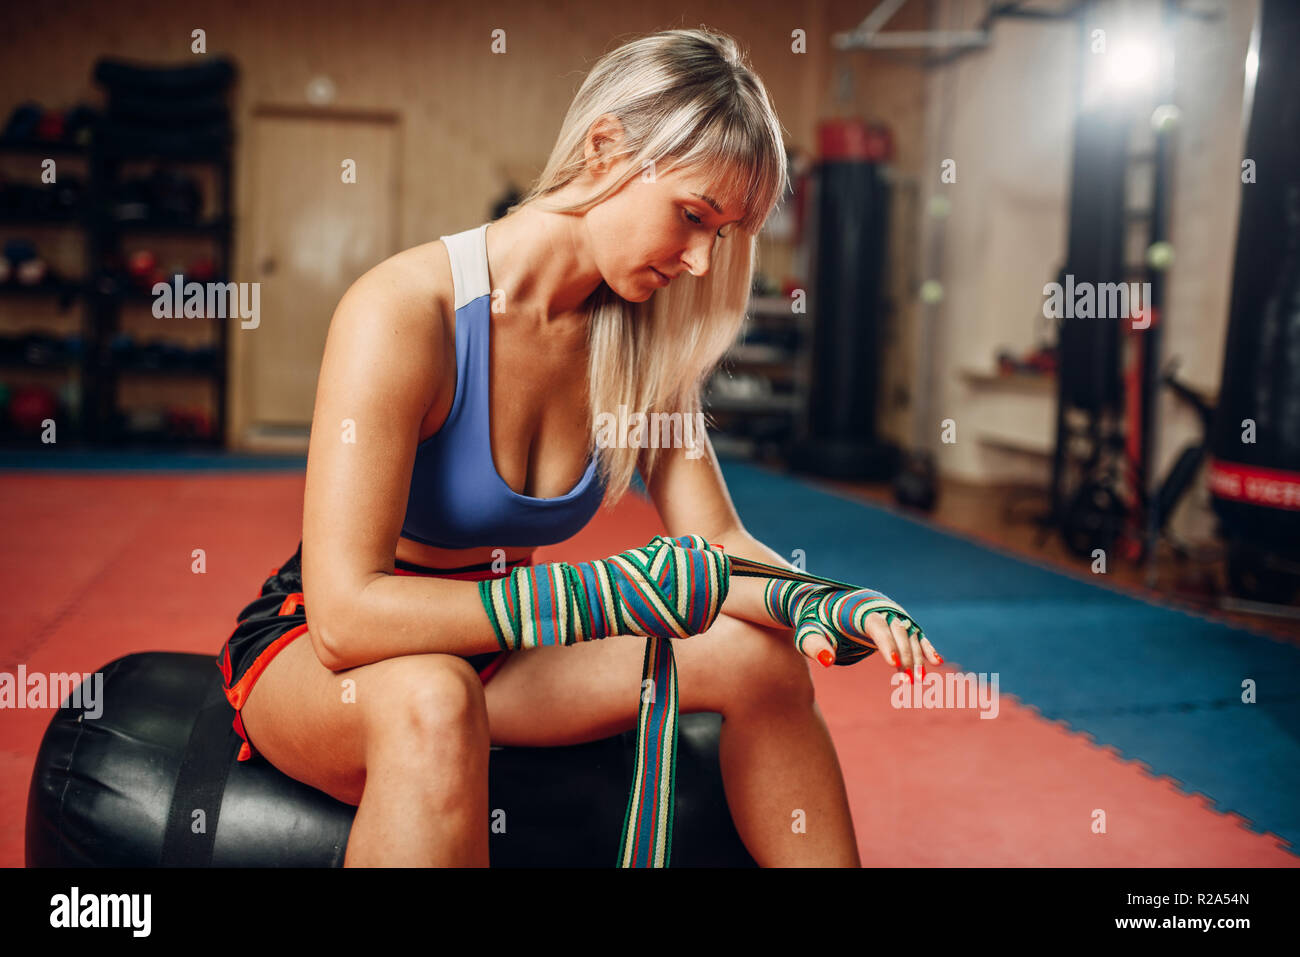 Weibliche kickboxer im Boxen Bandagen und Sportswear sitzen auf Boxsack nach dem Training im Fitnessraum. Frau Boxer auf Training, Kickboxen Praxis Stockfoto